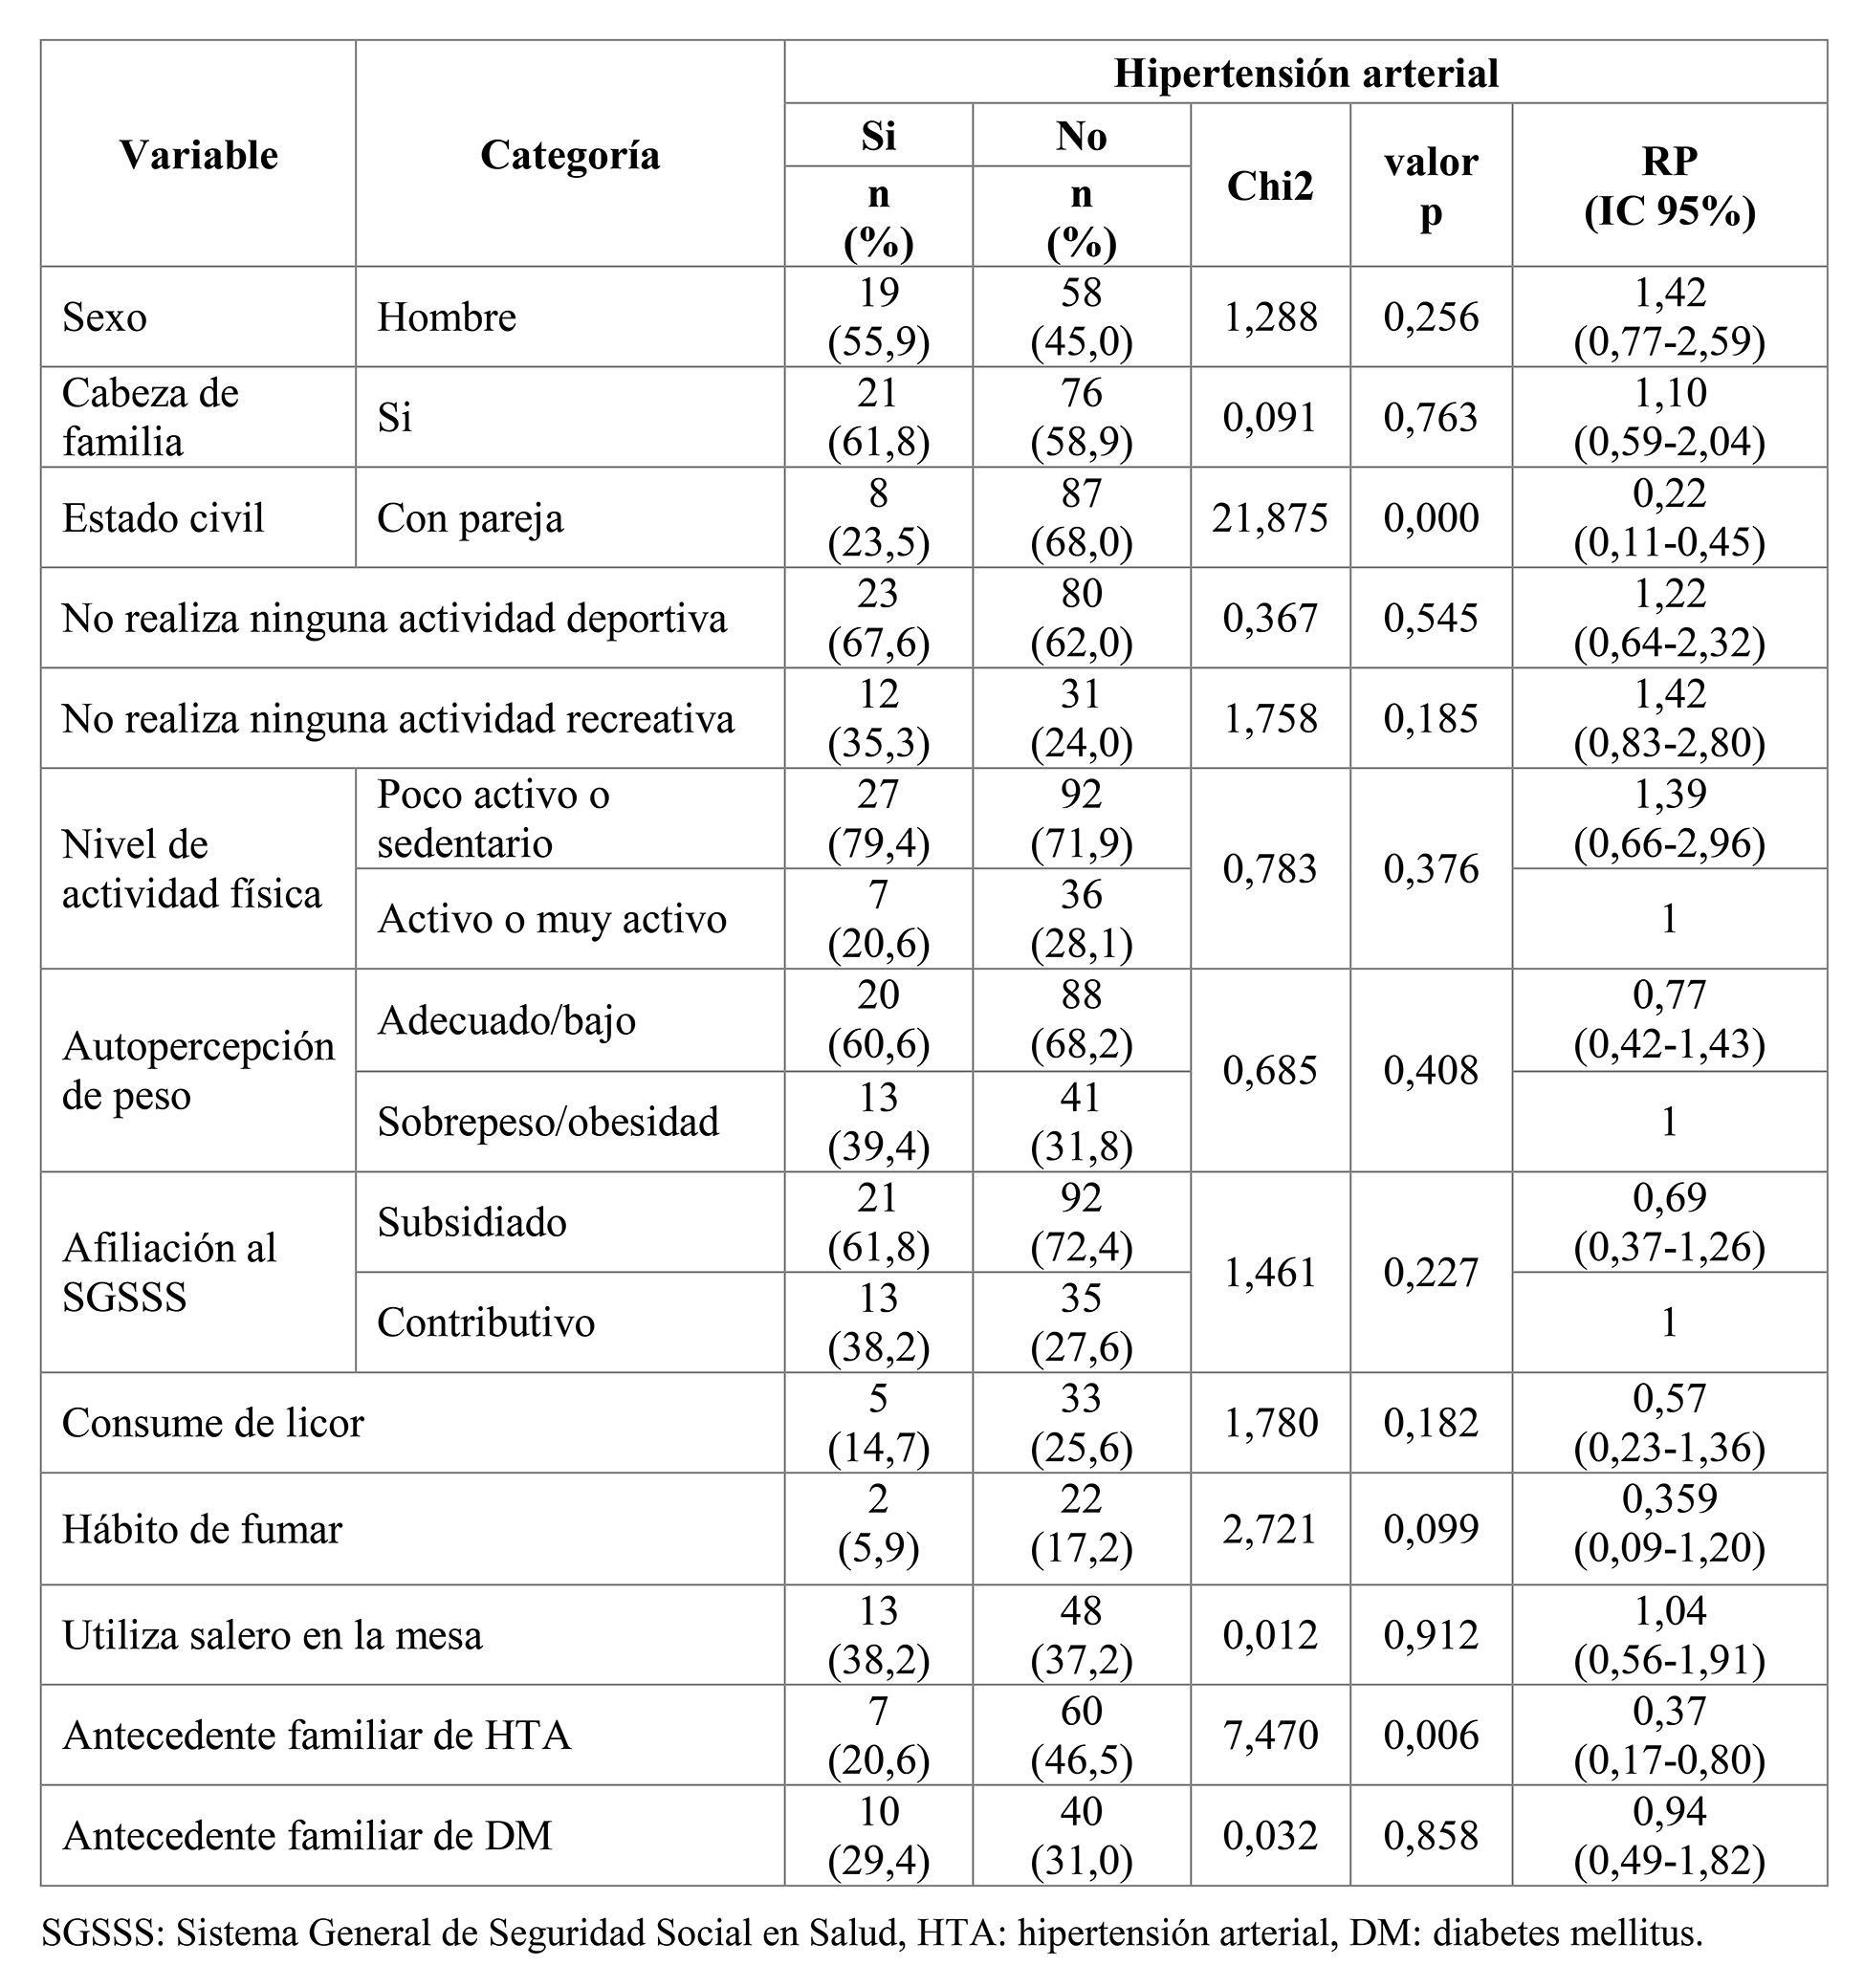 Análisis bivariado: asociación entre las principales variables cualitativas e hipertensión arterial. N=152